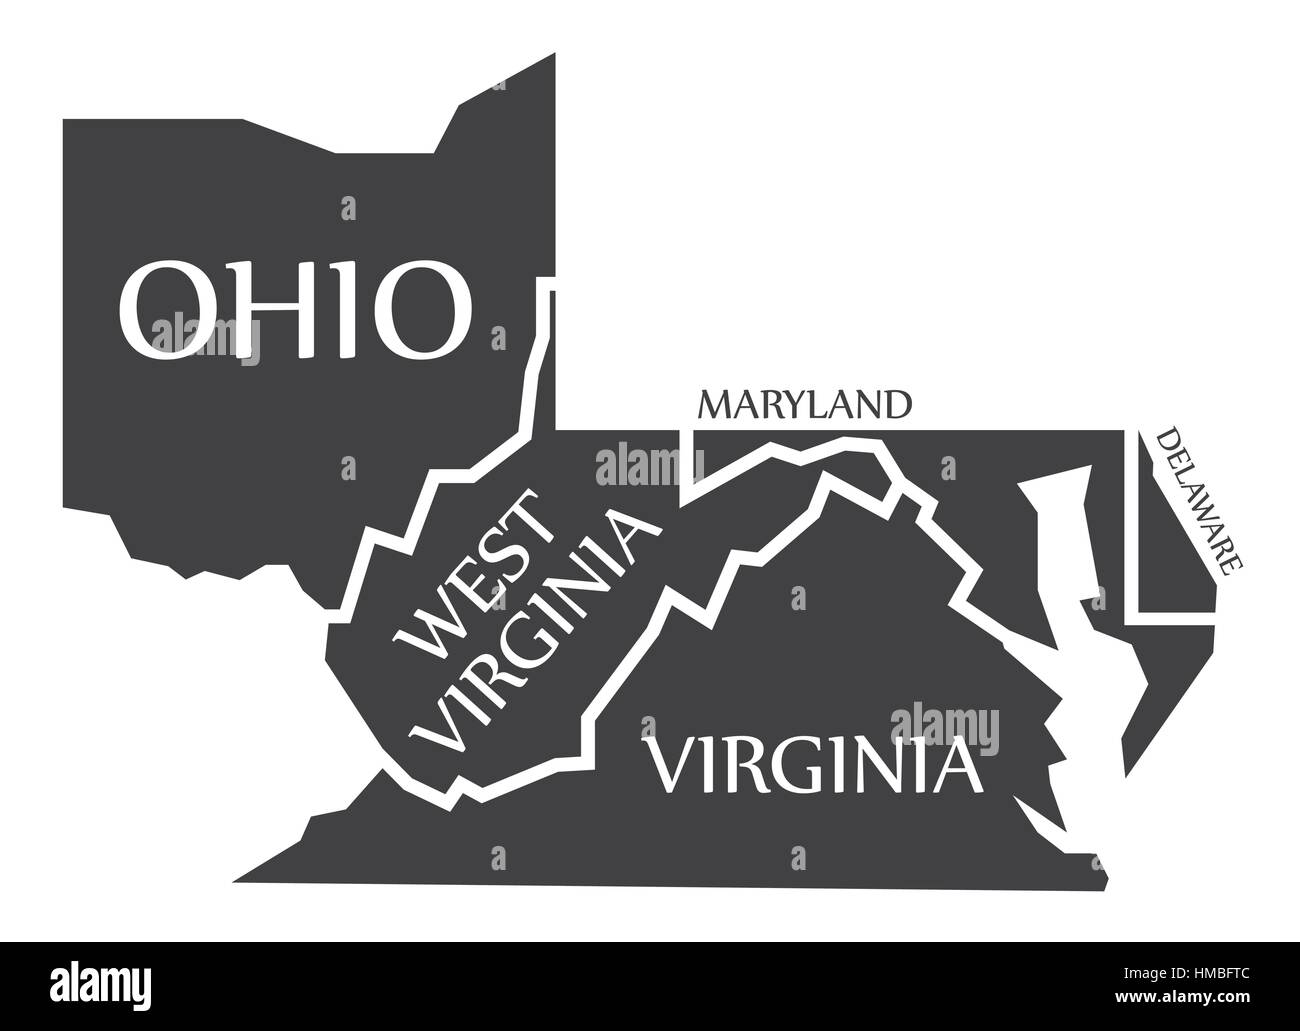 Ohio - West Virginia - Virginia - Maryland - Delaware Karte gekennzeichnet schwarz Abbildung Stock Vektor